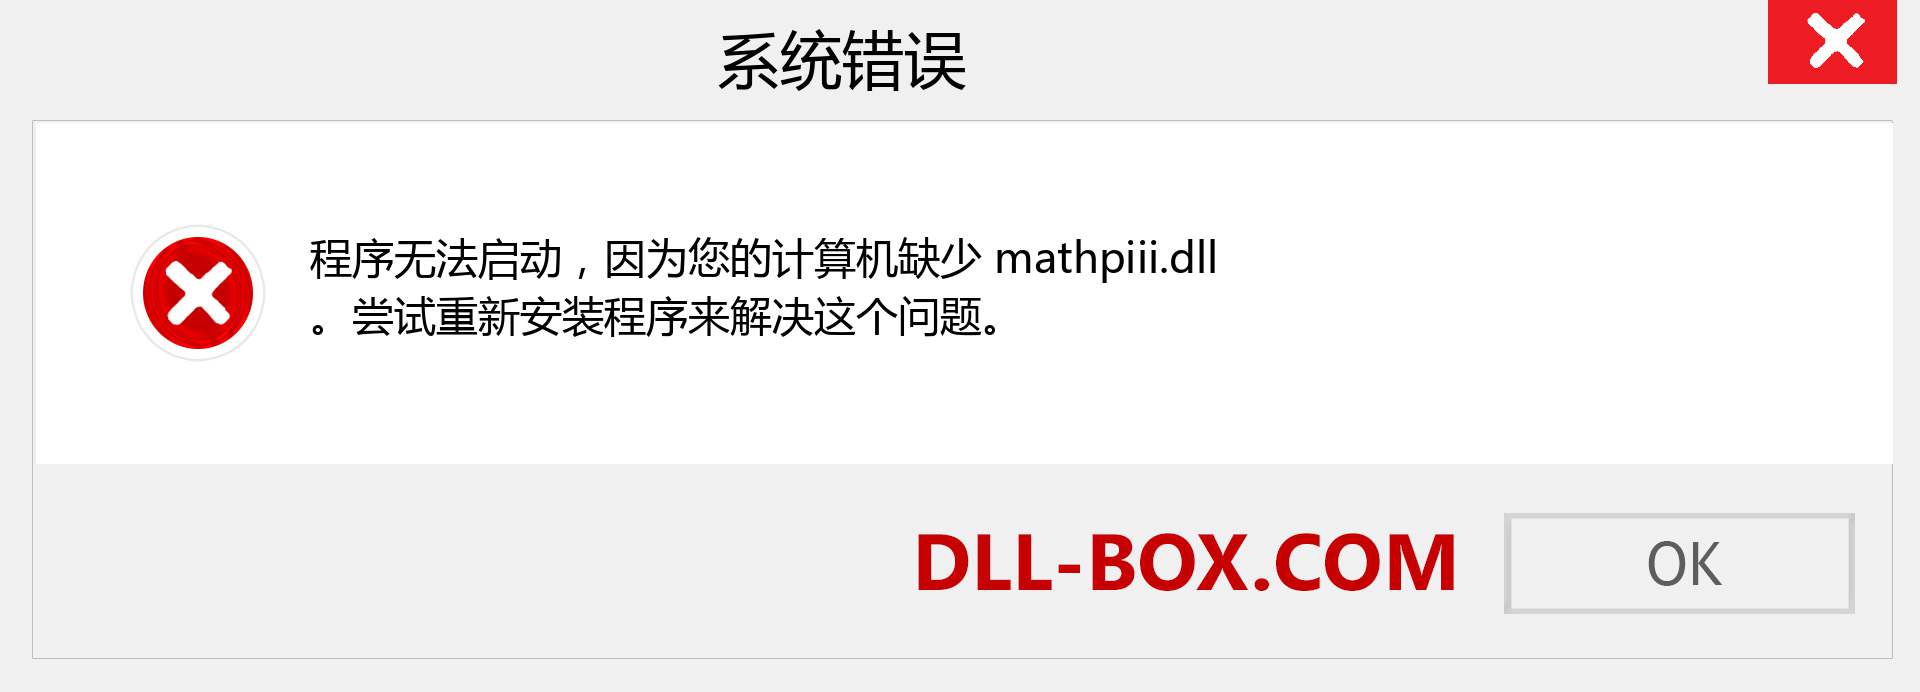 mathpiii.dll 文件丢失？。 适用于 Windows 7、8、10 的下载 - 修复 Windows、照片、图像上的 mathpiii dll 丢失错误